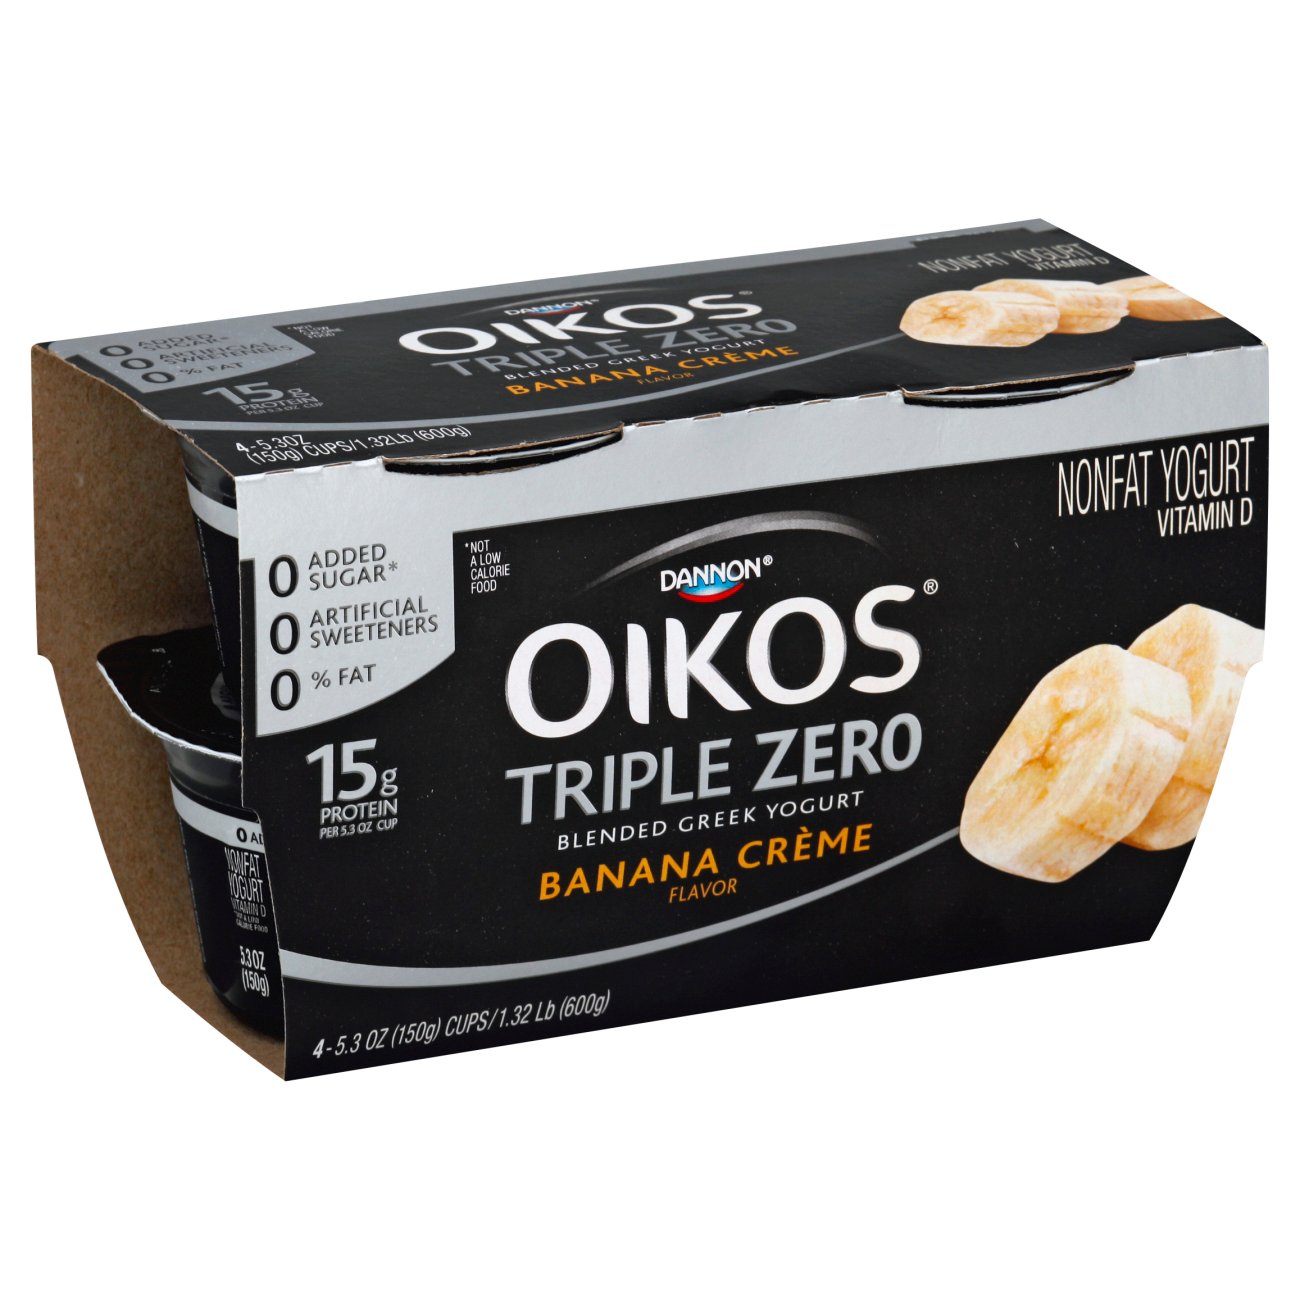 Dannon Oikos Triple Zero Banana Creme Blended Greek Yogurt - Shop ...